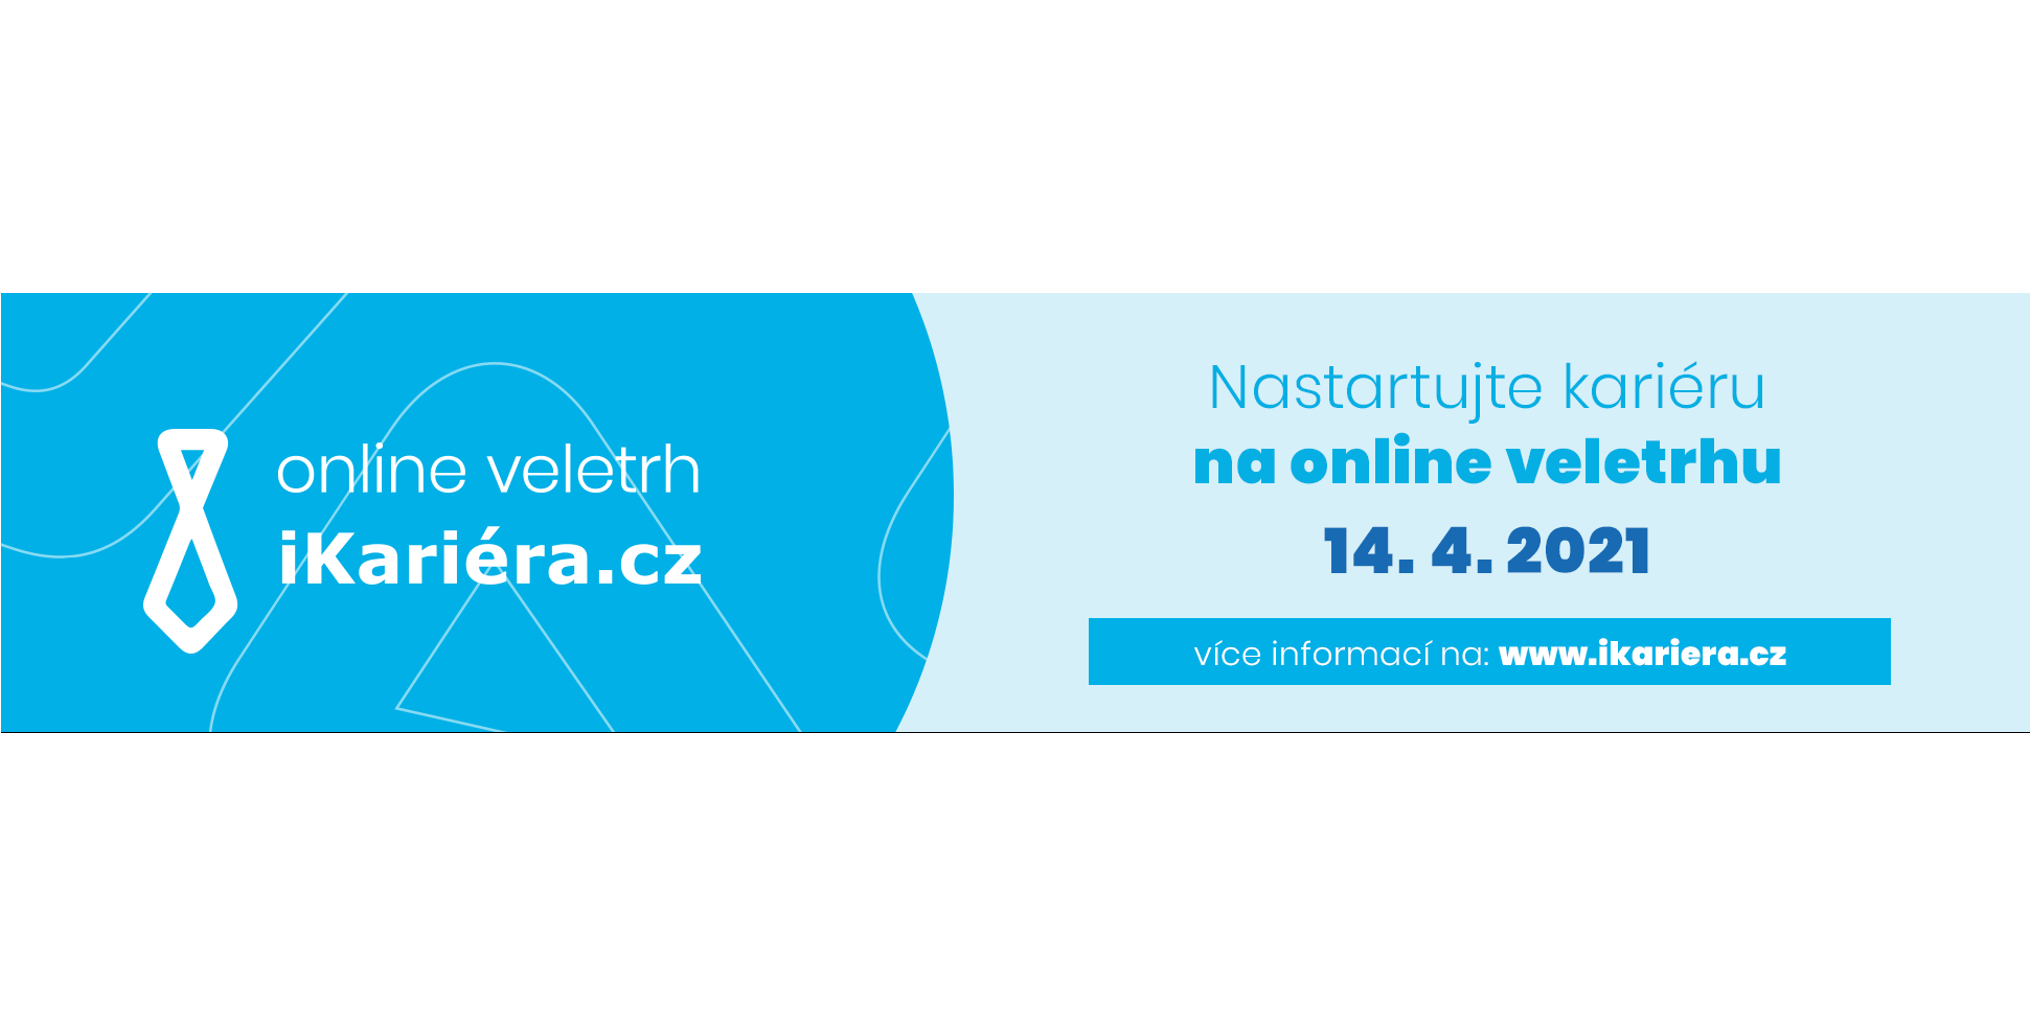 Online veletrh pracovních příležitostí iKariéra.cz 2021